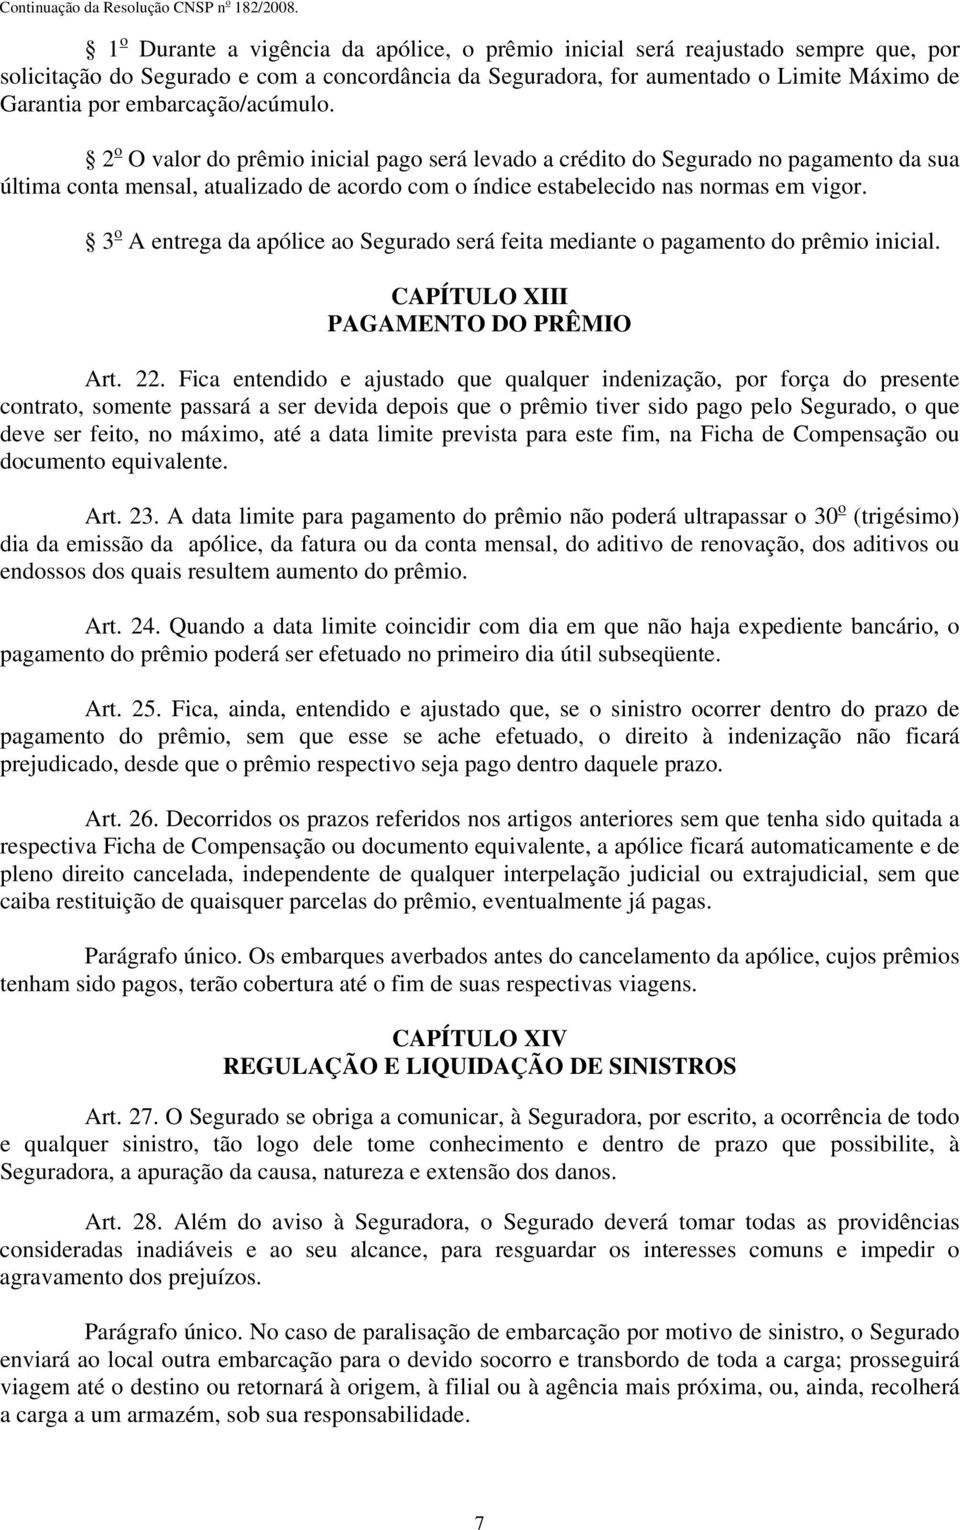 3 o A entrega da apólice ao Segurado será feita mediante o pagamento do prêmio inicial. CAPÍTULO XIII PAGAMENTO DO PRÊMIO Art. 22.